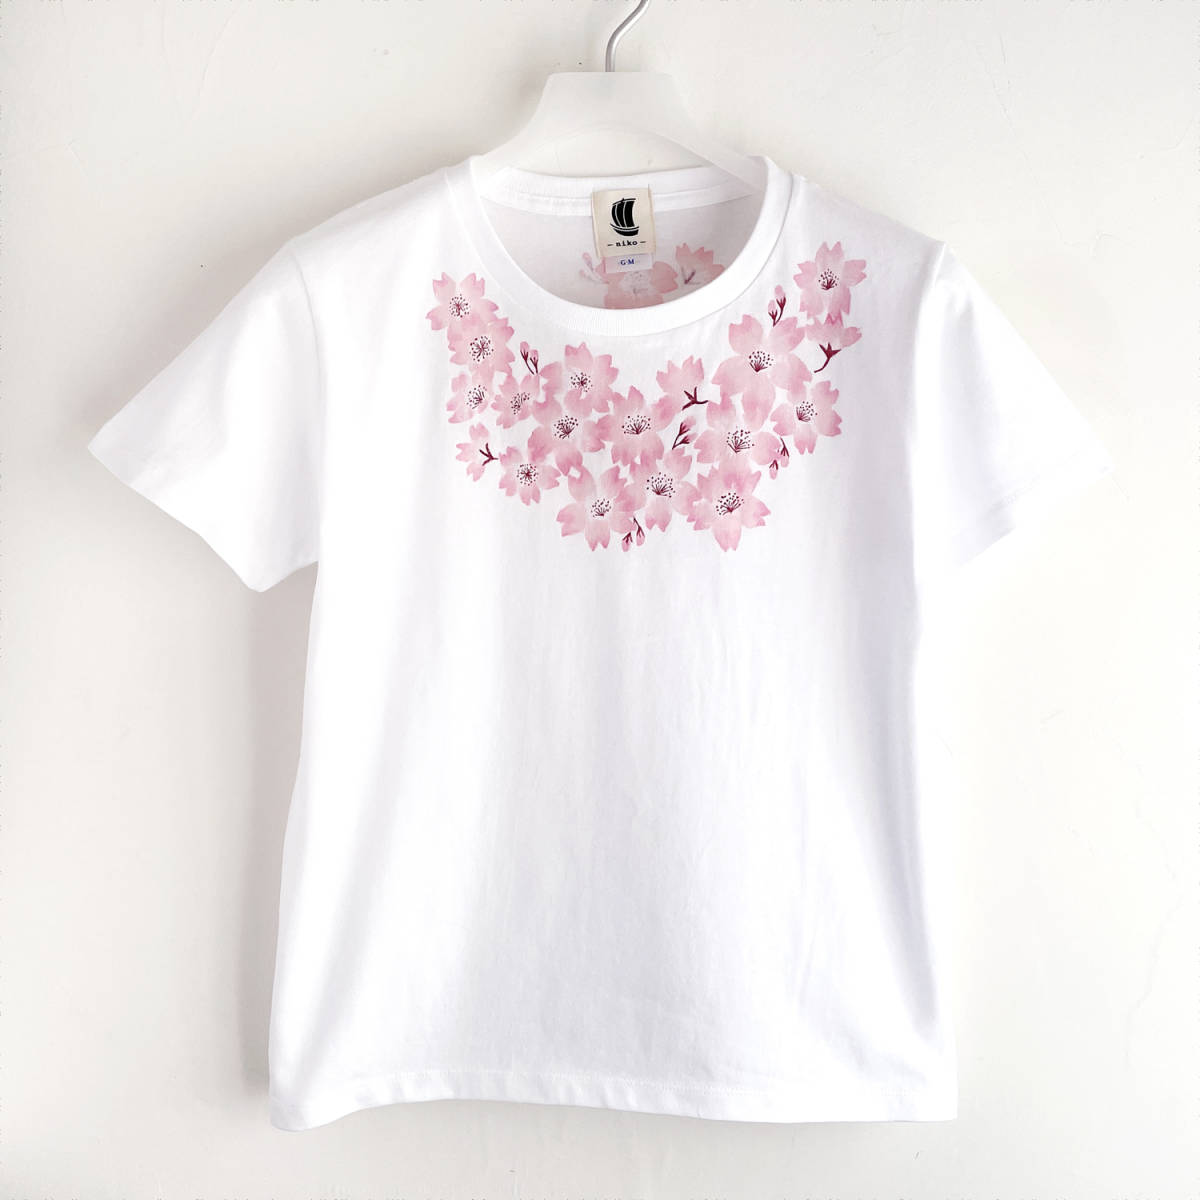 T-shirt femme, taille M, blanc, T-shirt à fleurs de cerisier corsage, t-shirt peint à la main, Taille moyenne, Col rond, À motifs